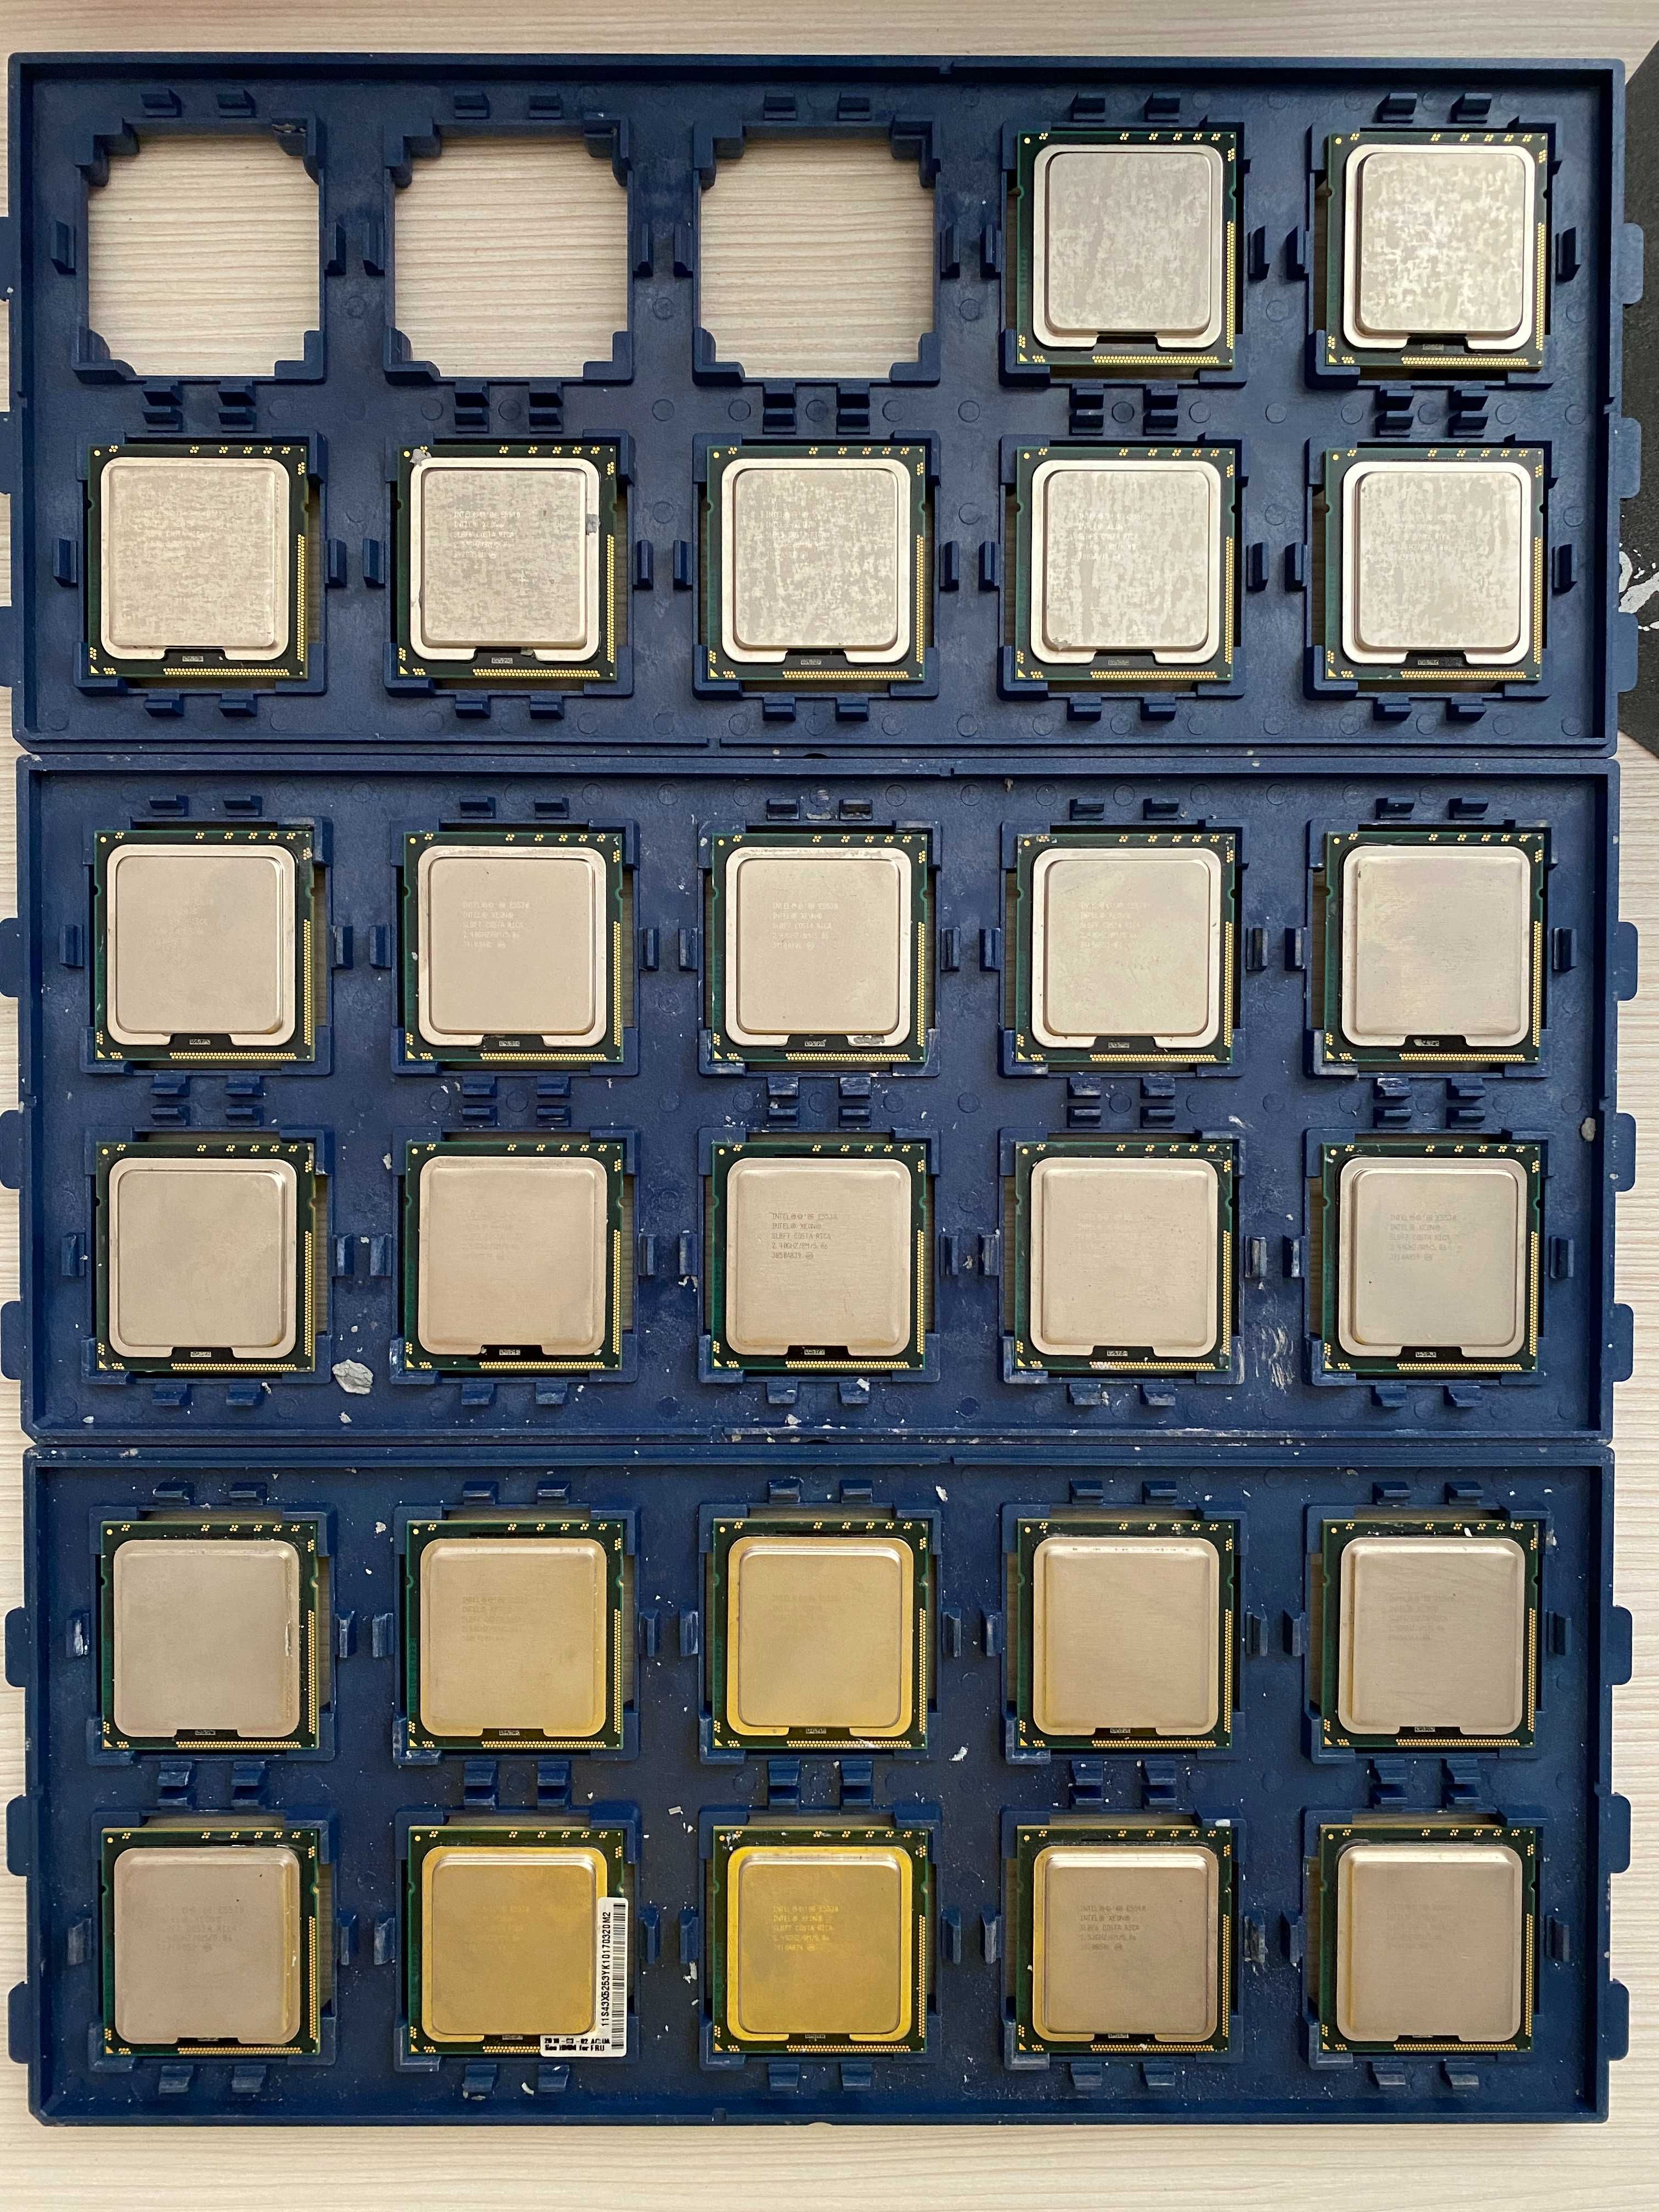 CPU Intel X5550, 5150, L5420, E5420, E5530, Q8200